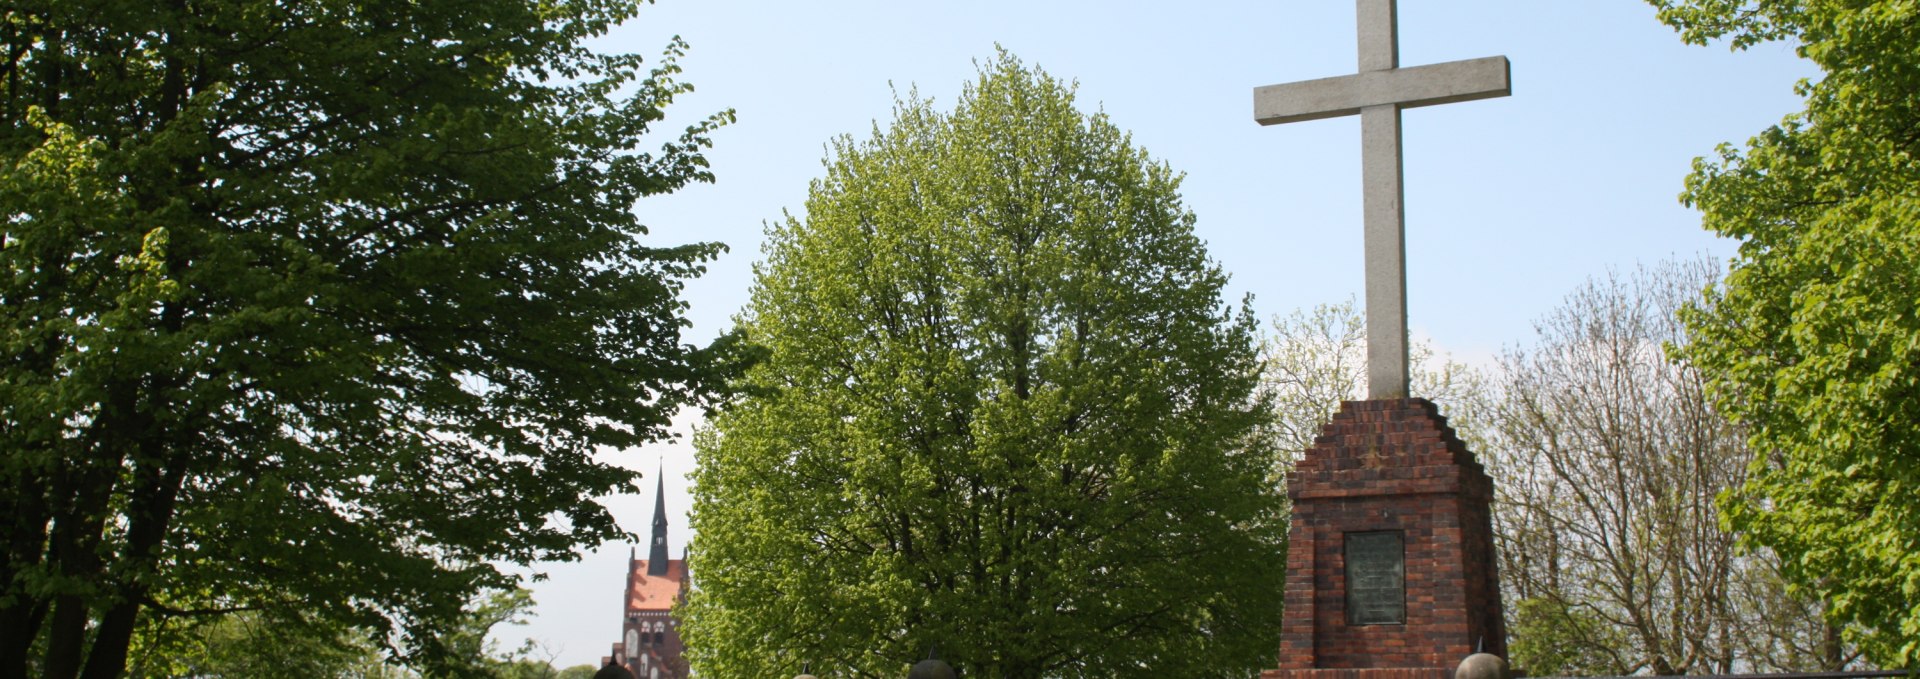 Das Granitkreuz wurde 1928 zur Erinnerung an die Christianisierung des pommerschen Adels errichtet, © Stadtinformation Usedom